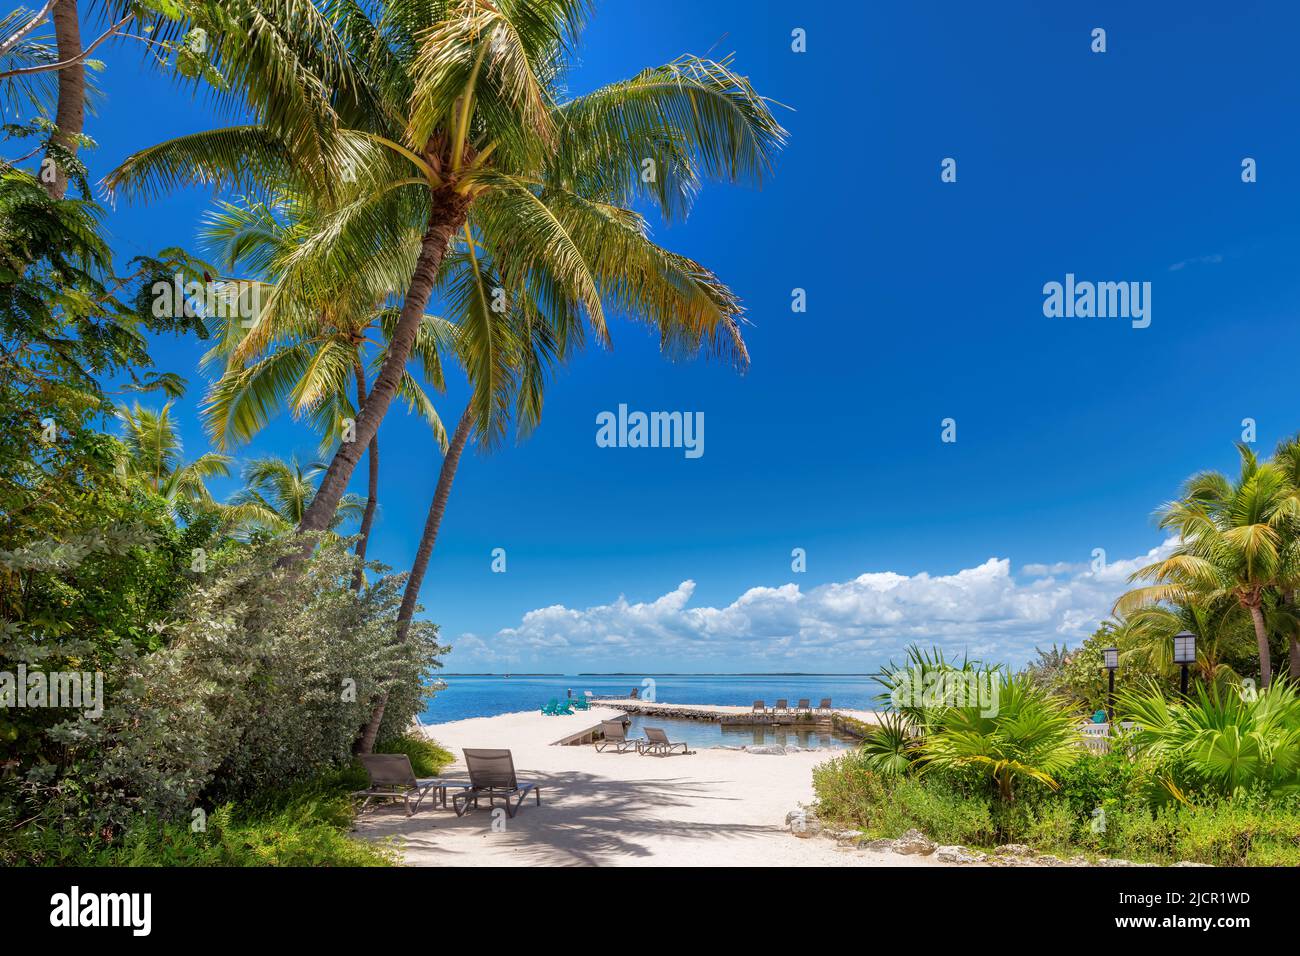 Palmeras y muelle en una hermosa playa tropical en la isla del Caribe Foto de stock